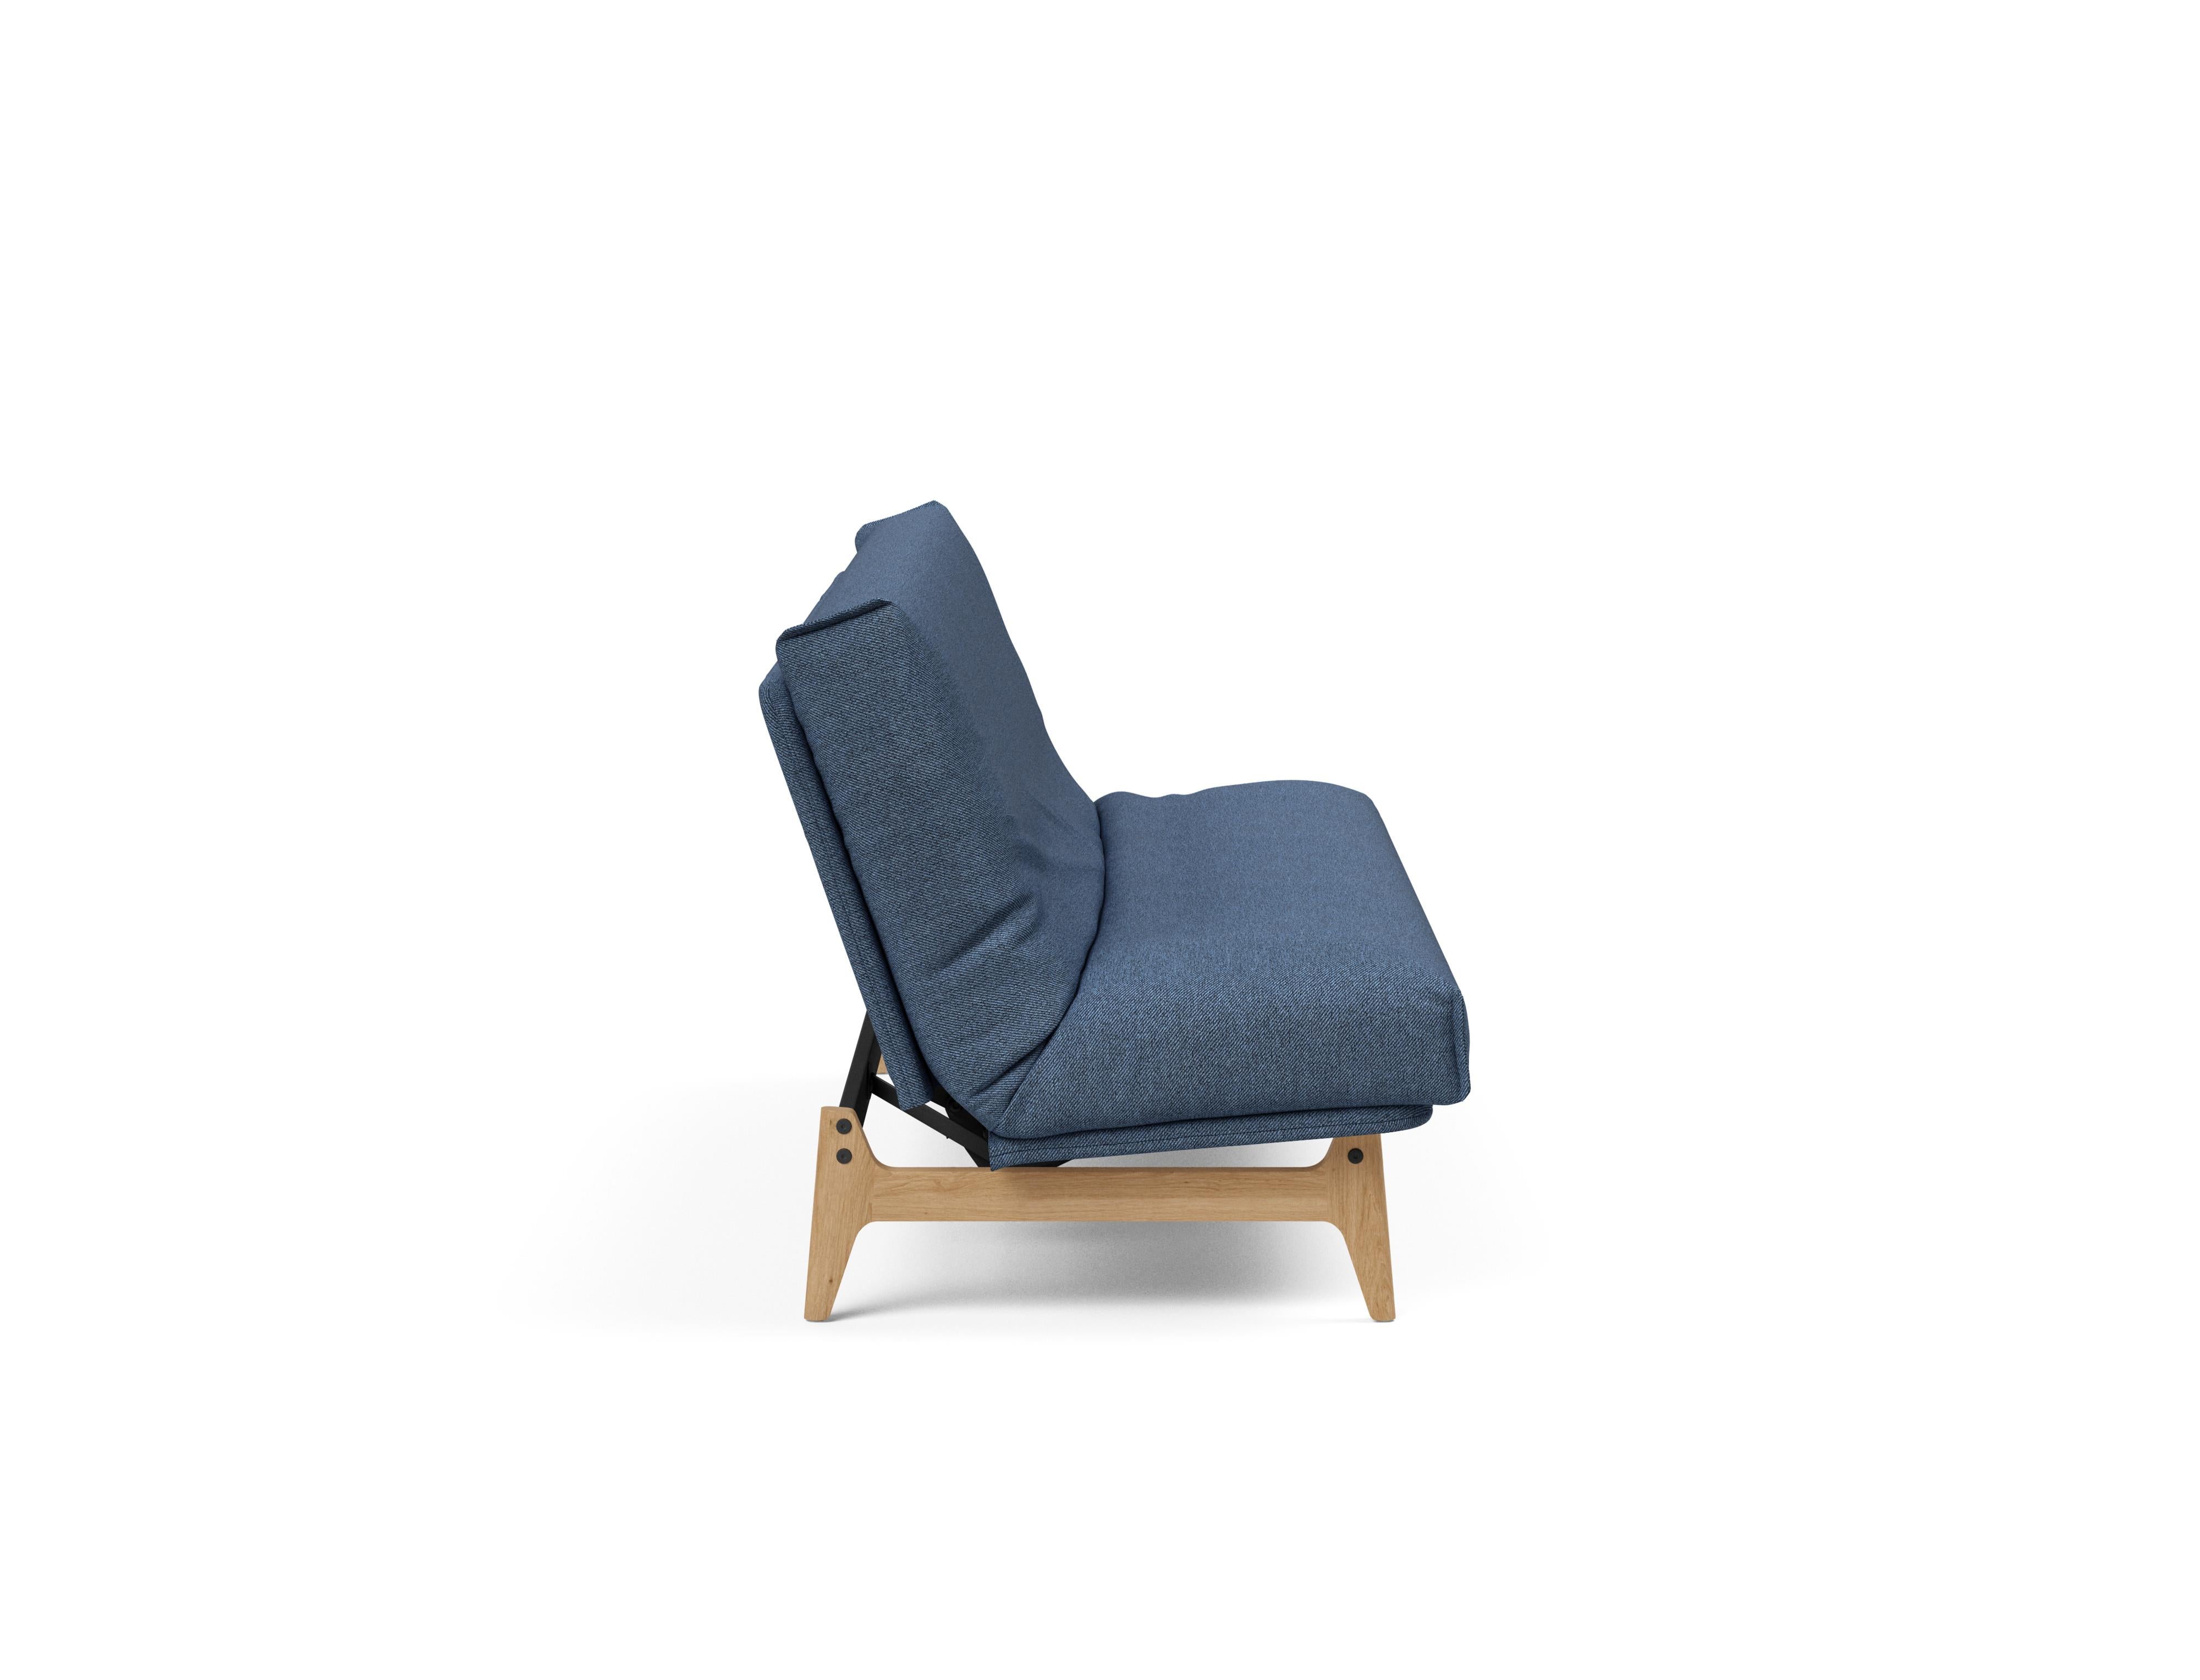 Aslak 120 Bettsofa Nordic Cover in Blau 302 präsentiert im Onlineshop von KAQTU Design AG. Bettsofa ist von Innovation Living